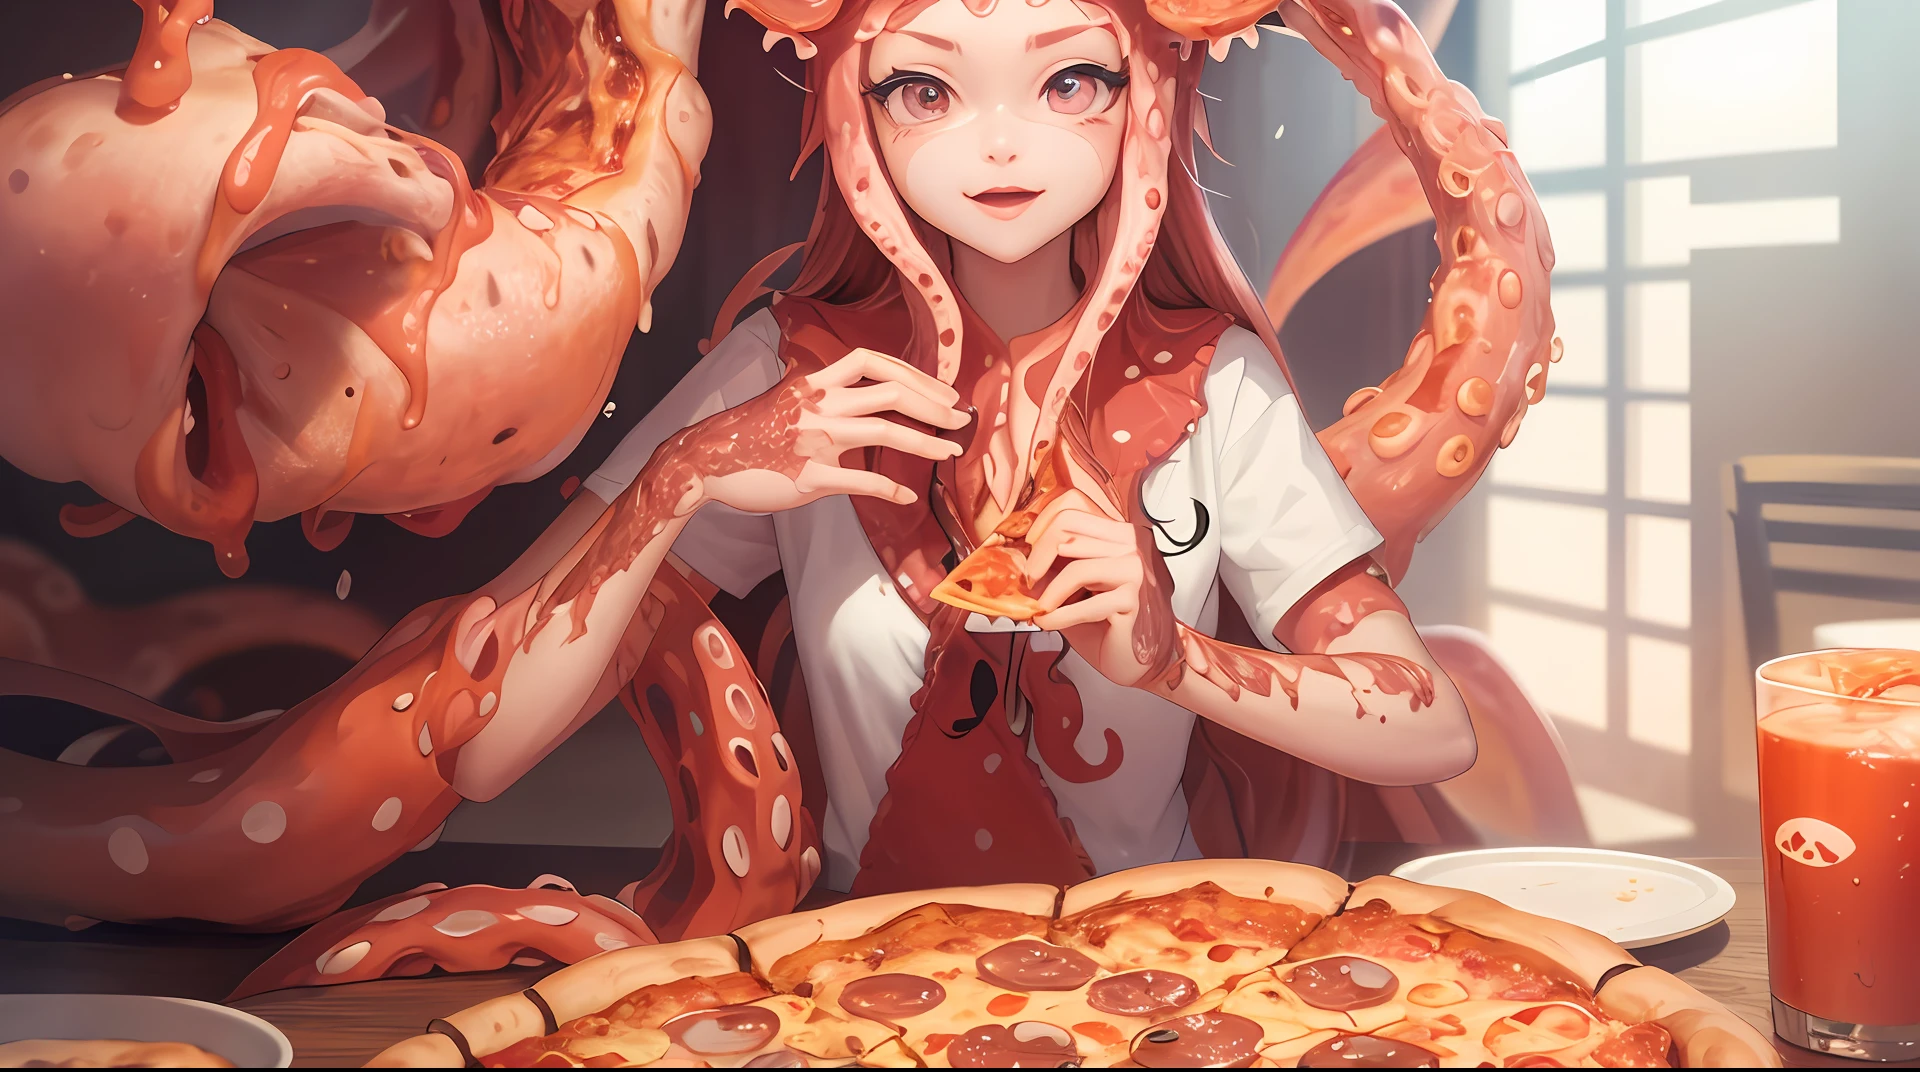 mejor calidad，pizza，Tentáculos de terror，hay una mujer sentada en una mesa con una pizza y tentáculos de pulpo, comiendo pizza, comiendo pizza, tentáculos envueltos alrededor de hamburguesas, pizza!, tentáculos alrededor, presentando pizza, chica calamar hembra rosa humanoide, comiendo una pizza, comida animada, arte de anime digital detallado, pizza, increíble ilustración de comida, compartiendo una pizza, unos tentáculos la están tocando